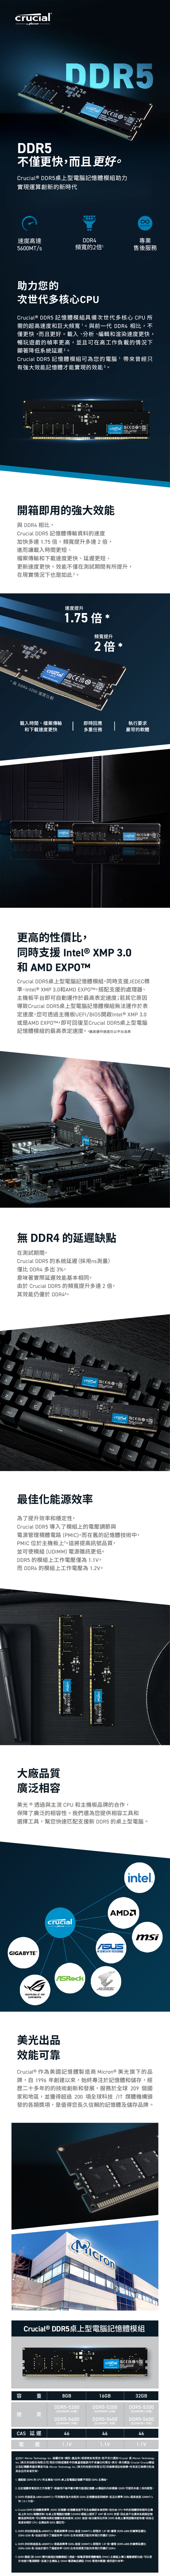 桌上型DDR5 Desktop 5200_5600 Product Page_TW.jpg